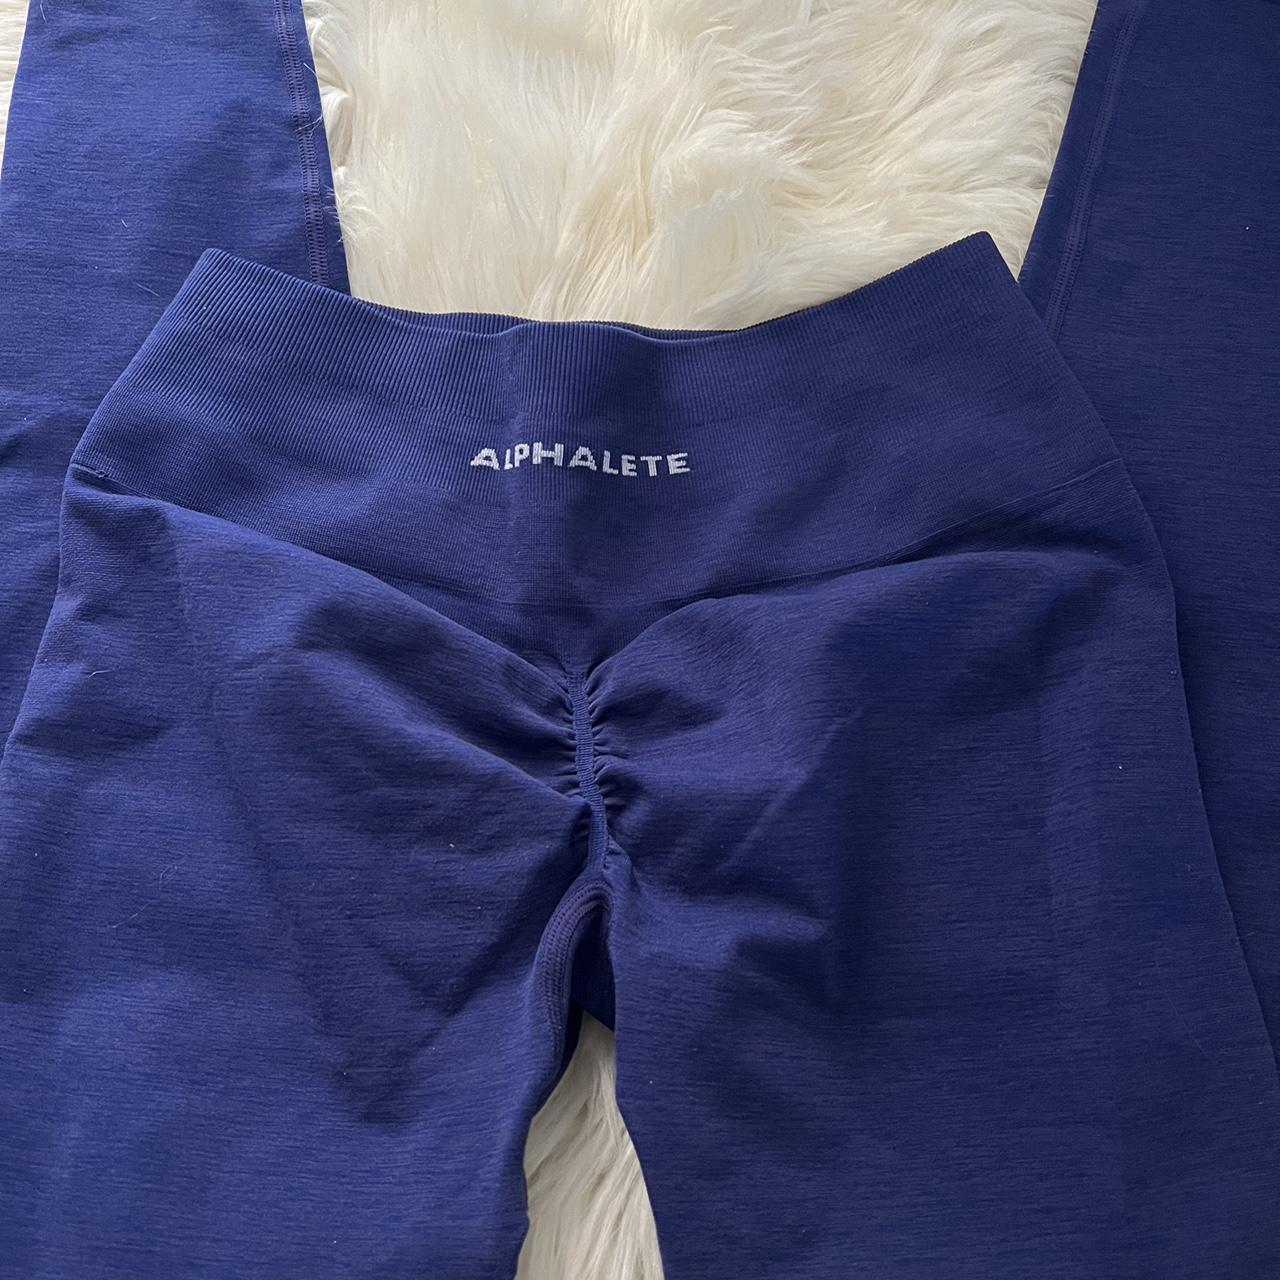 Alphalete Amplify leggings in charcoal size xxs. - Depop